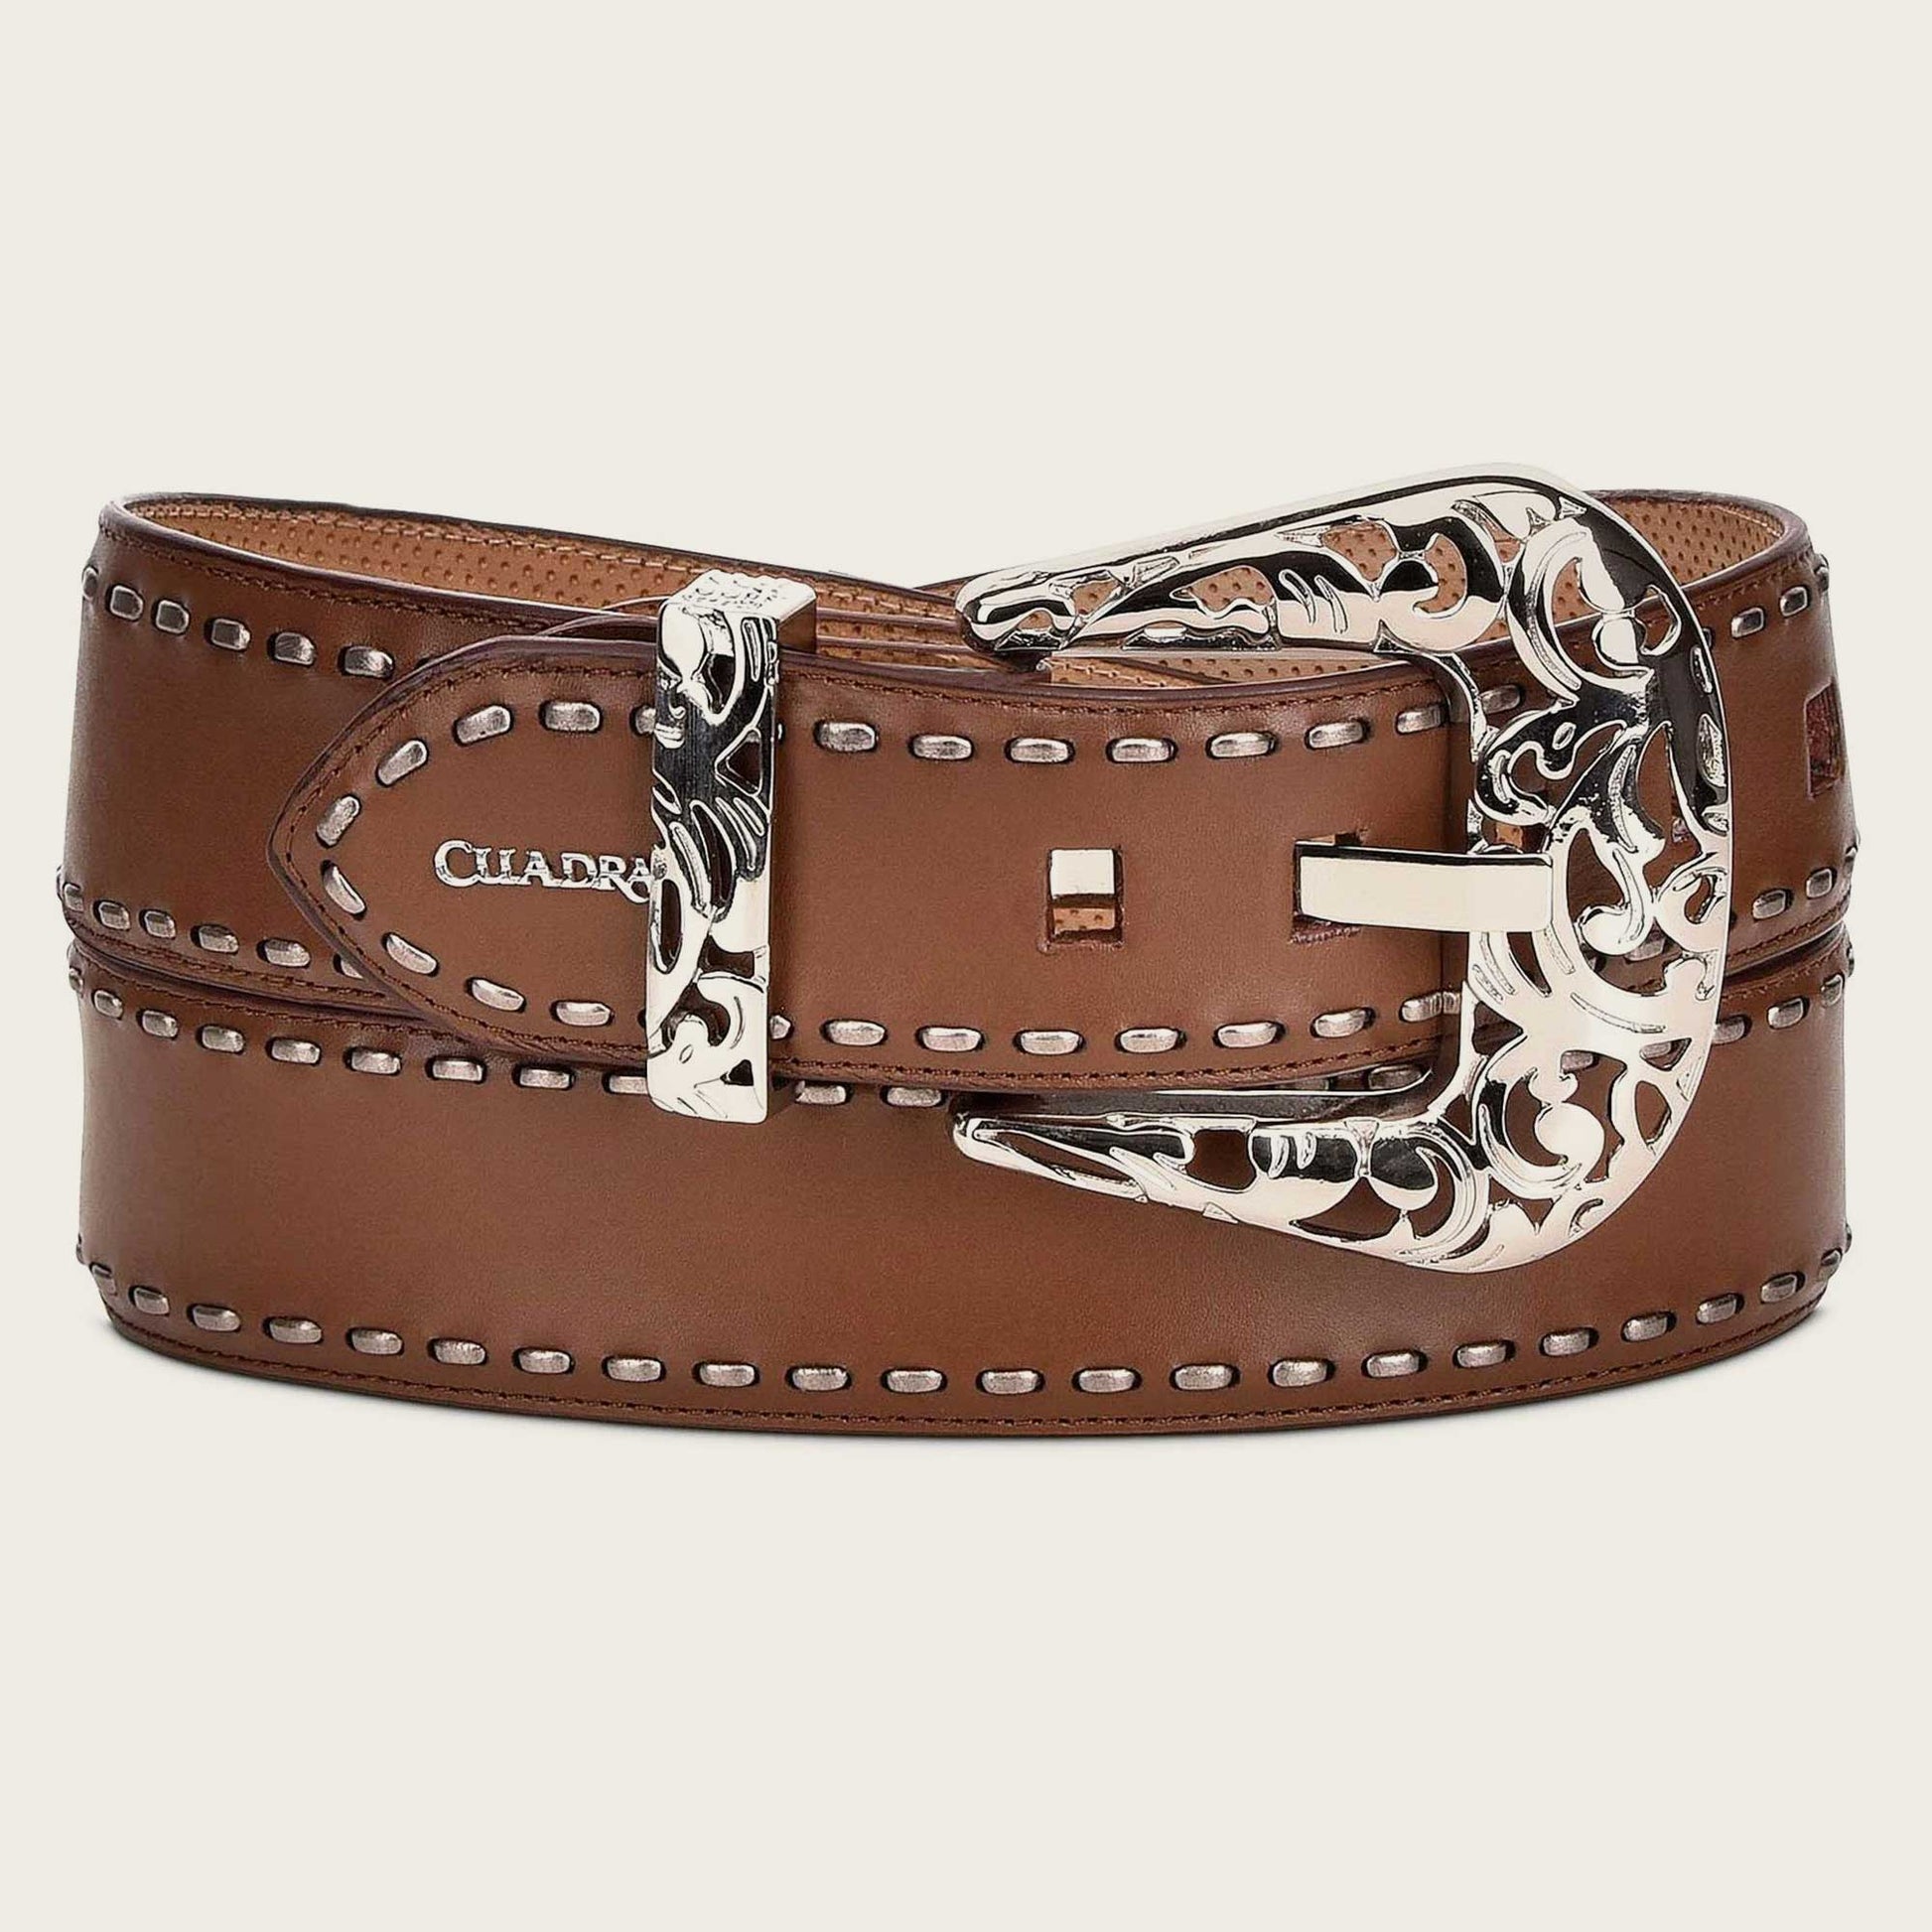 Handwoven honey leather belt, western belt for women, bovine leather